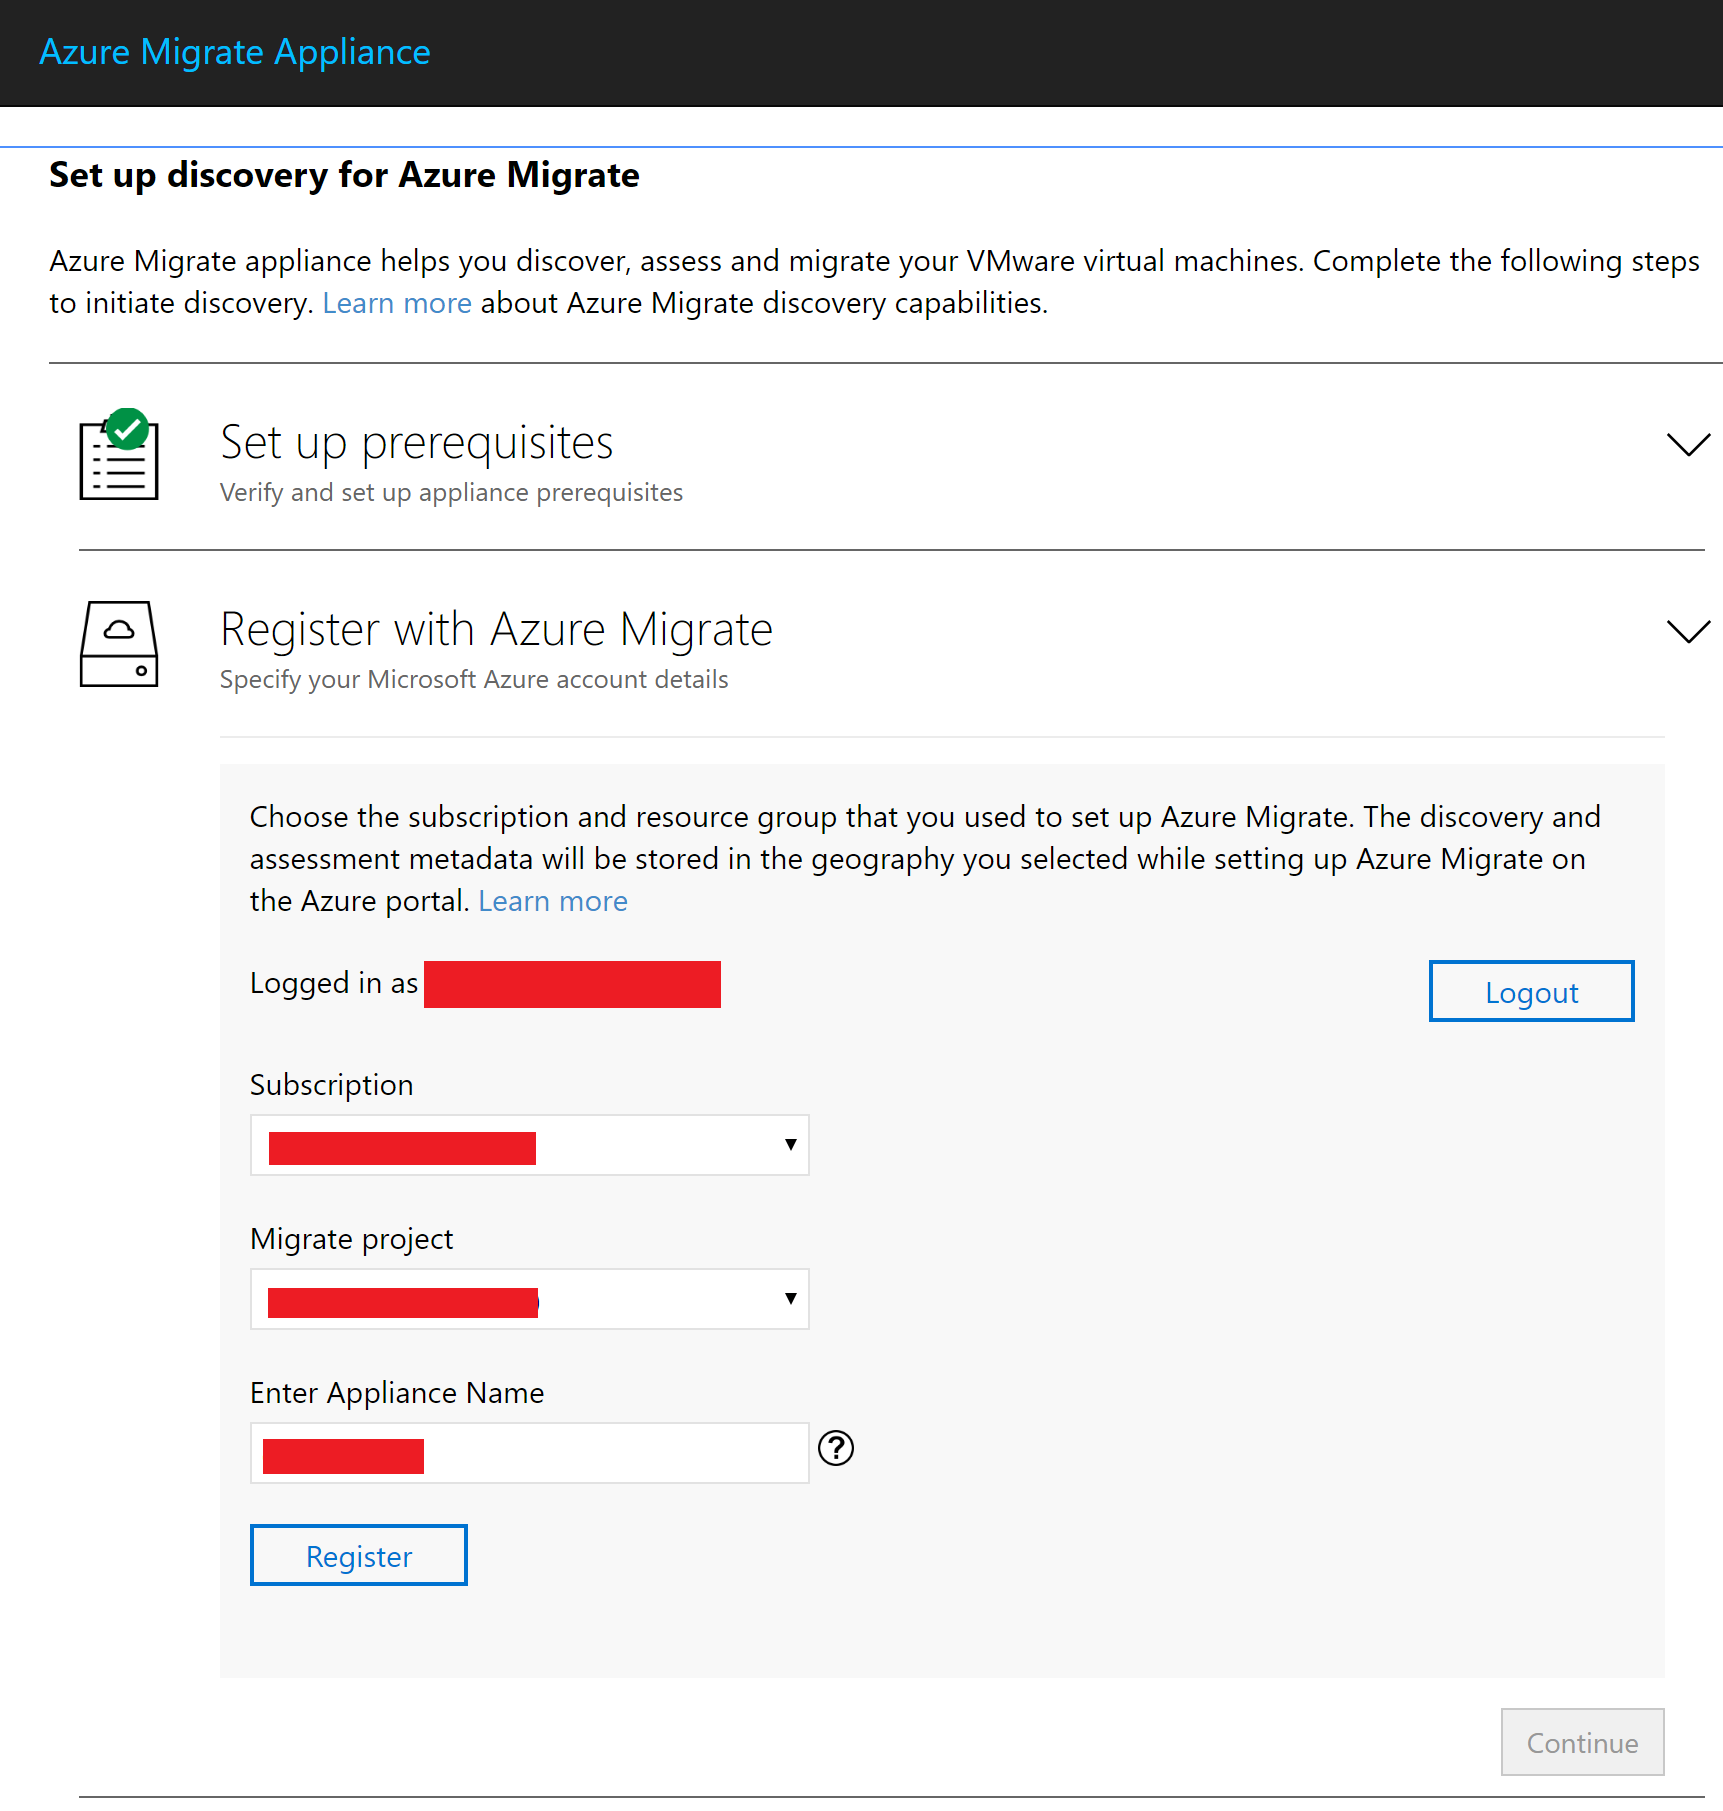 Captura de pantalla que muestra las selecciones para el registro con Azure Migrate.